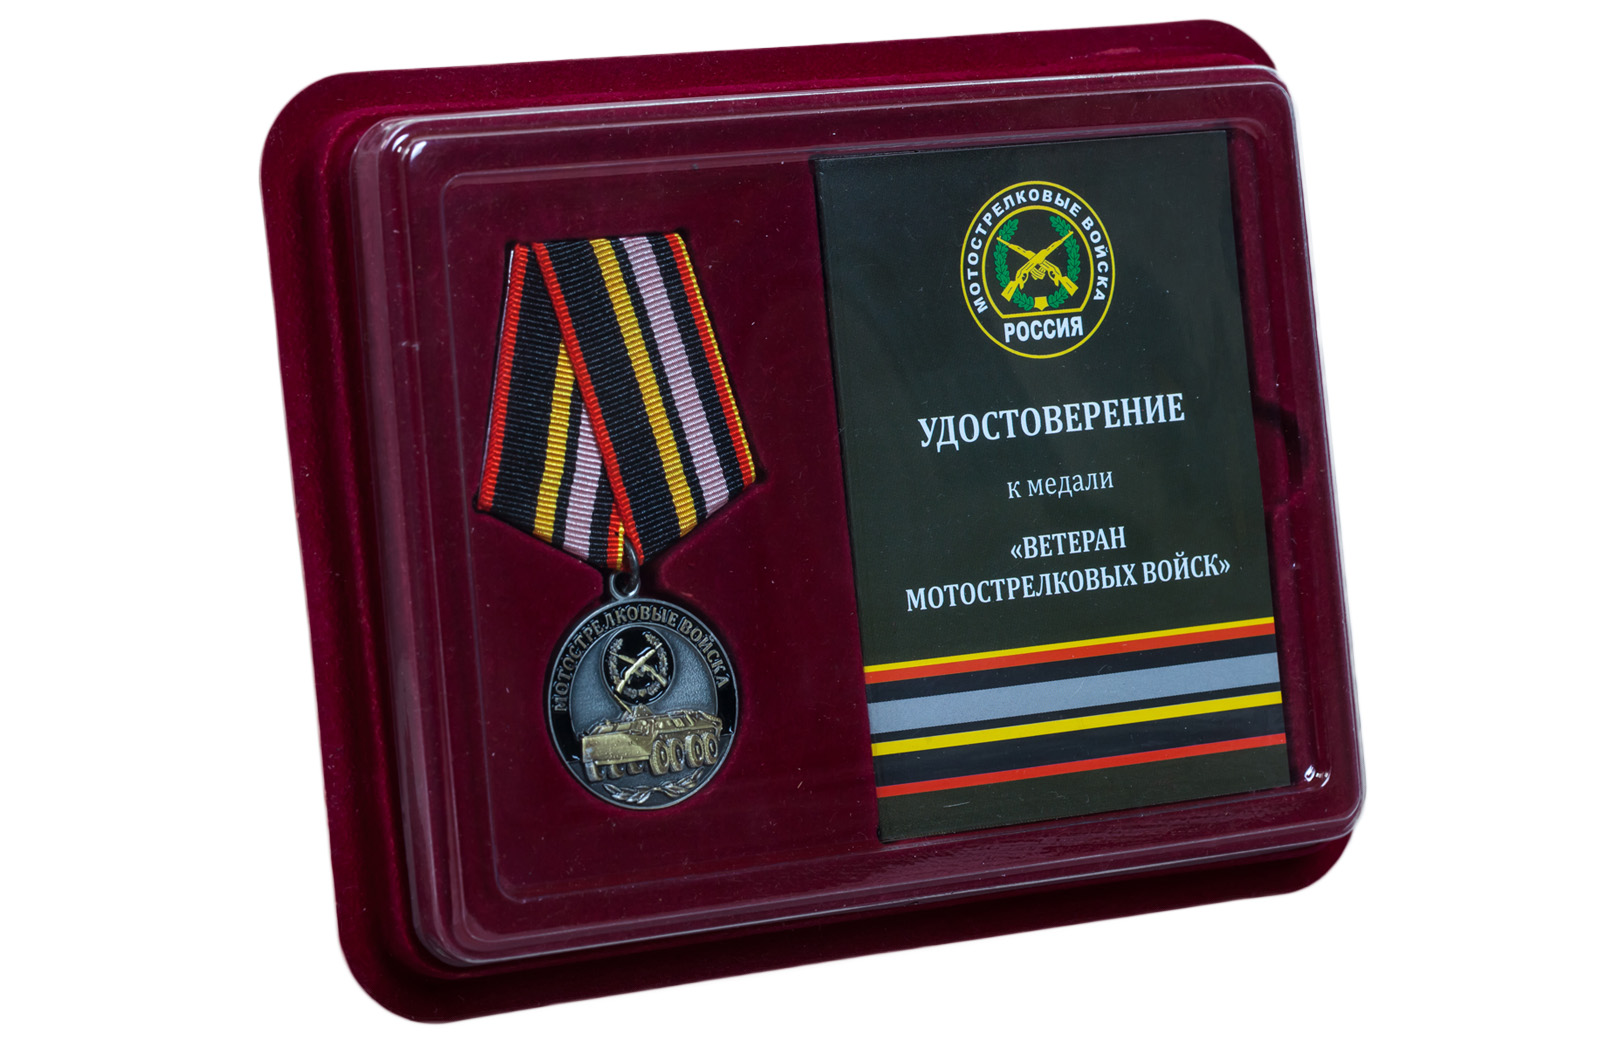 Купить медаль Мотострелковых войск по экономичной цене